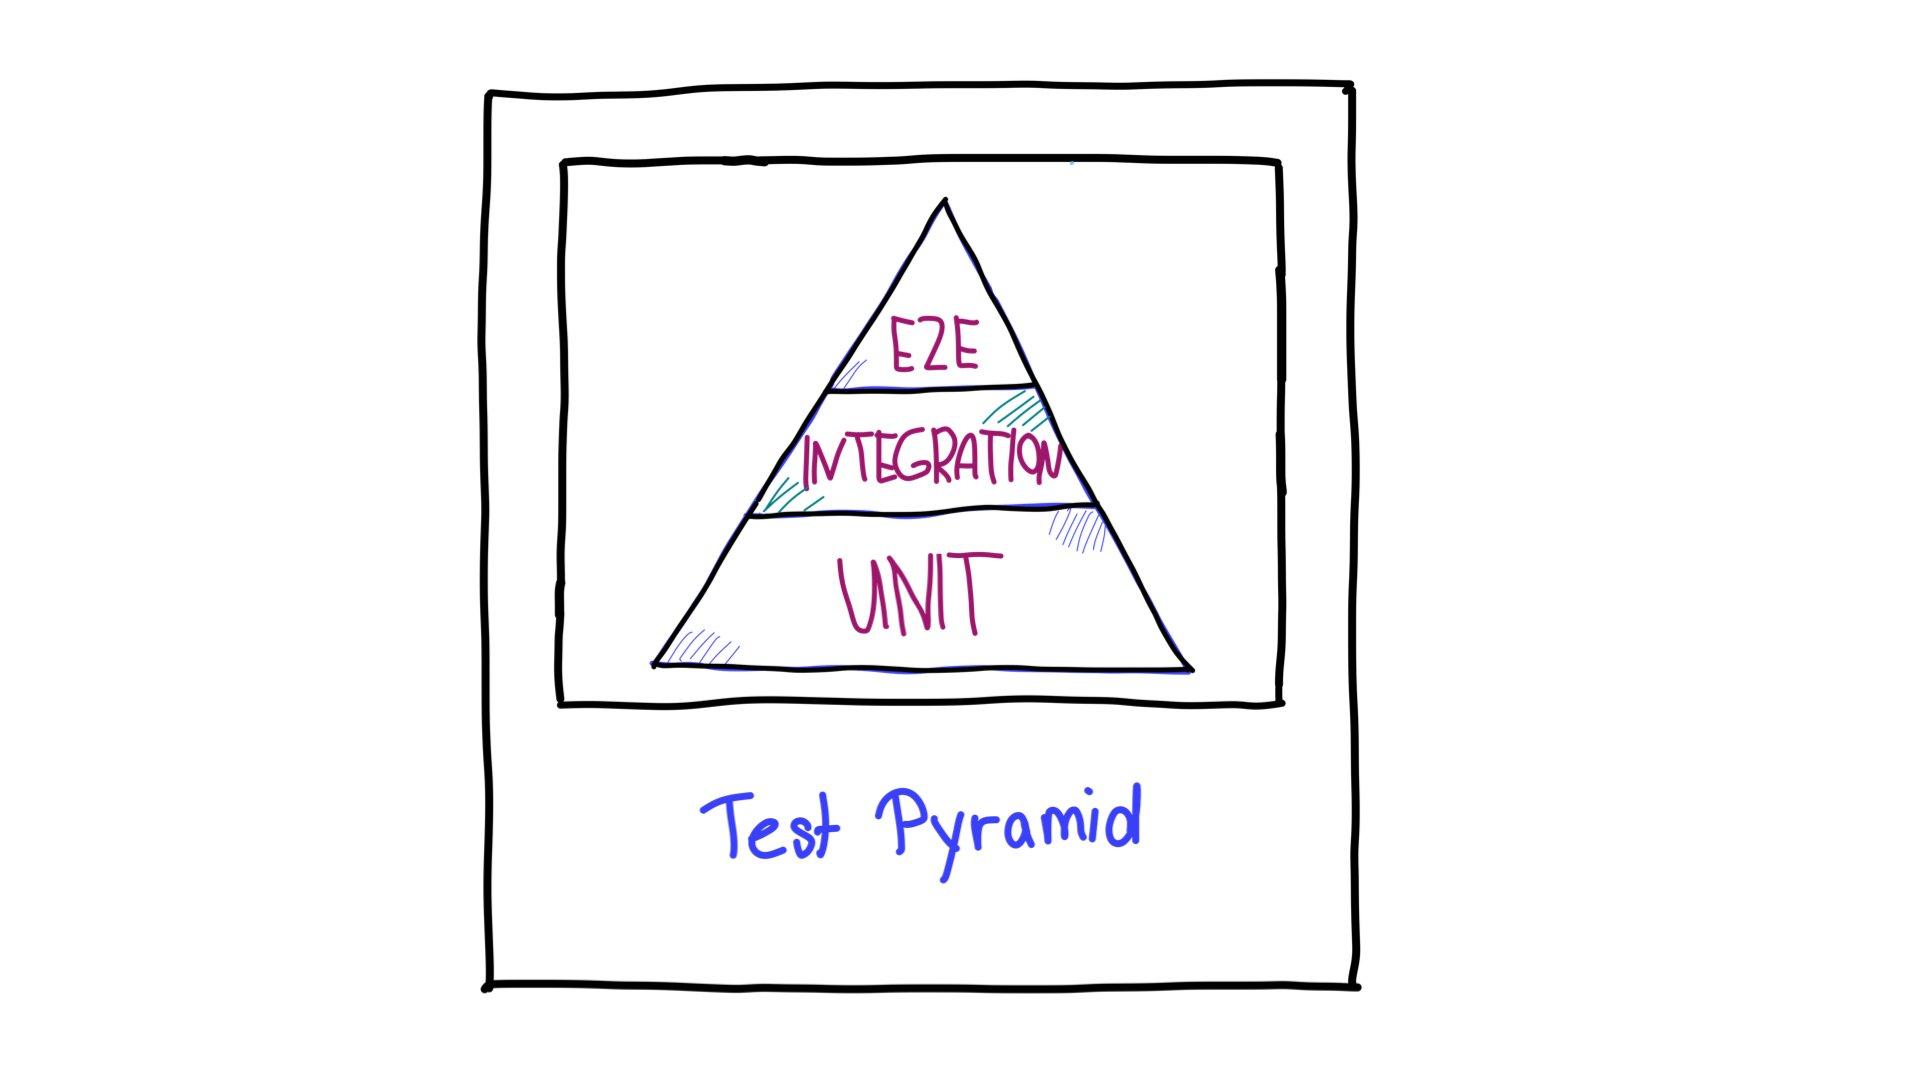 La piramide di test, con i test end-to-end (E2E) nella parte superiore, i test di integrazione a metà e i test delle unità nella parte inferiore.